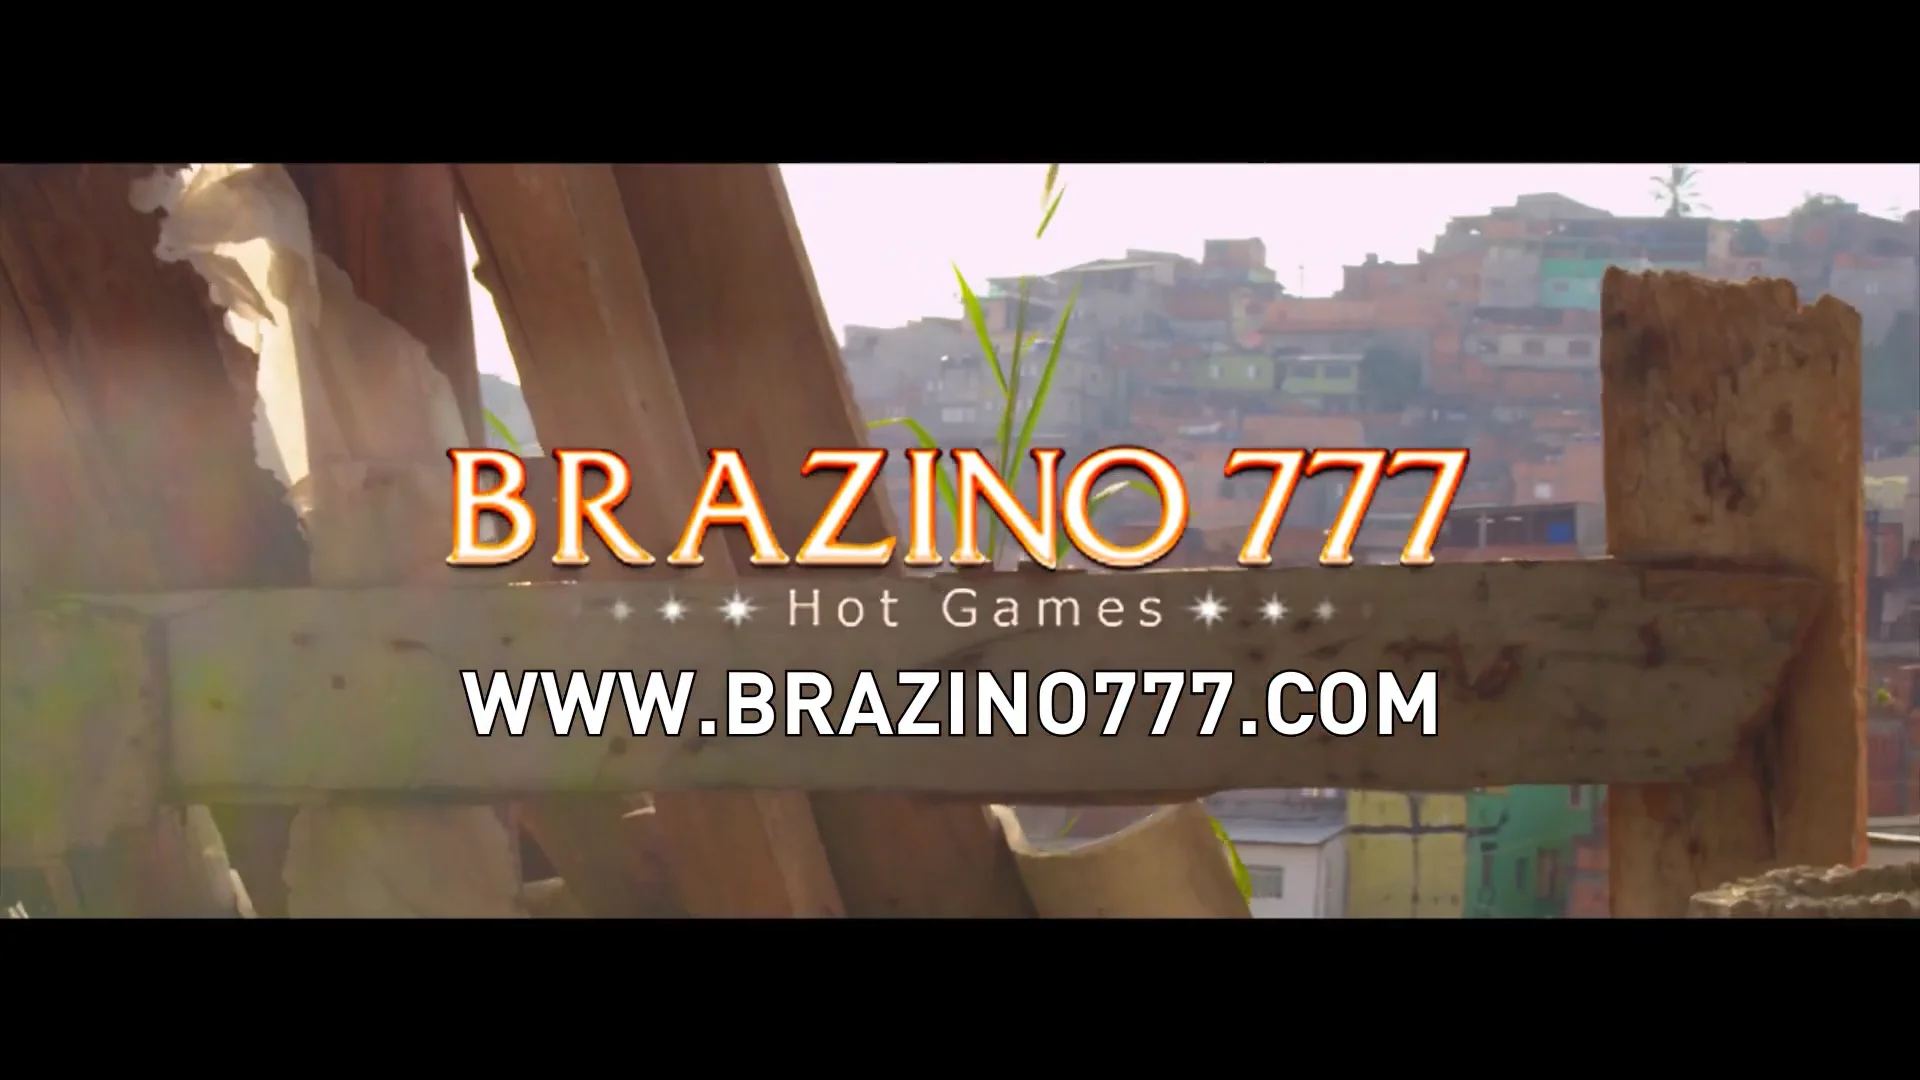 Acessibilidade e compatibilidade: jogue no Brazino777 de qualquer dispositivo